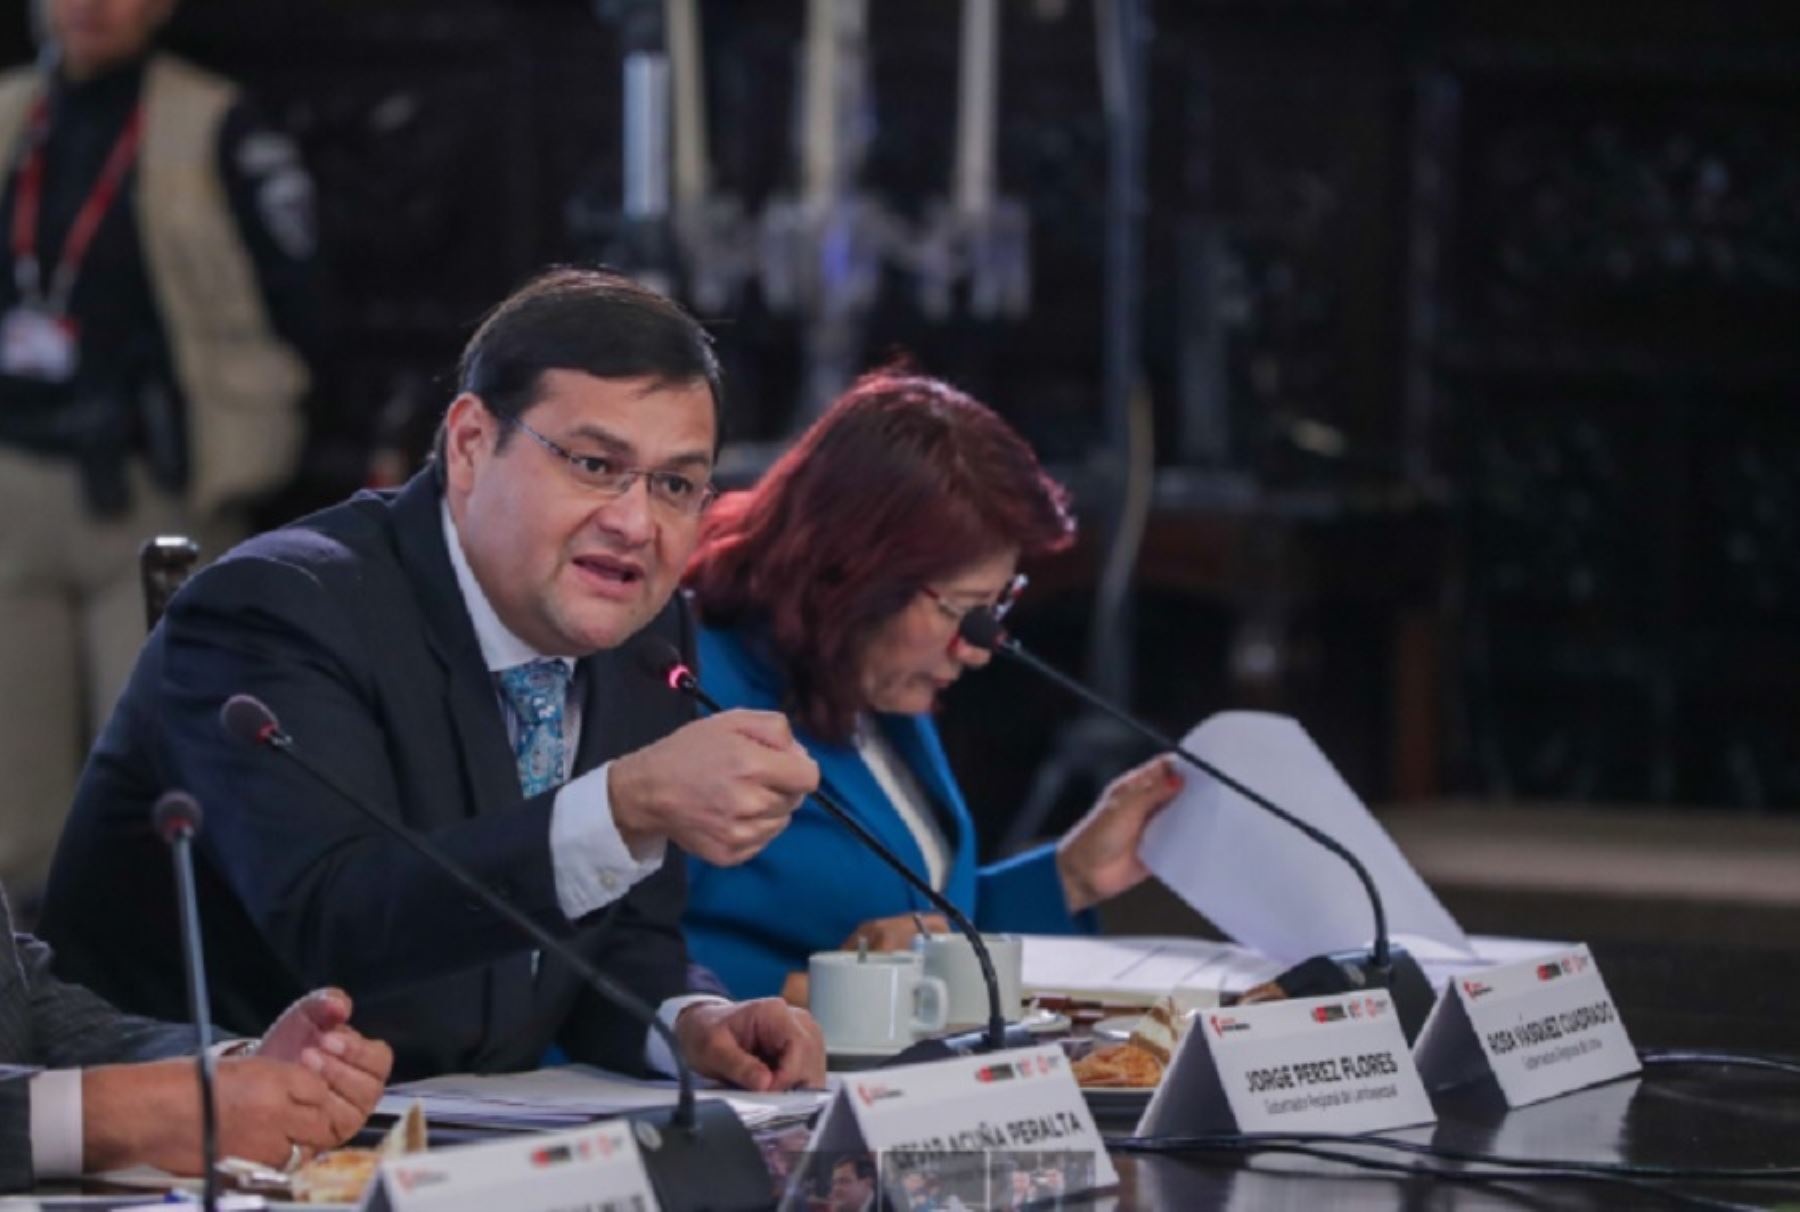 El gobernador regional de Lambayeque, Jorge Pérez Flores, anunció la creación de un corredor comercial y productivo que fortalecerá el desarrollo de las regiones Lambayeque, Cajamarca y Amazonas que conforman la Mancomunidad Regional Nor Oriente del Perú.